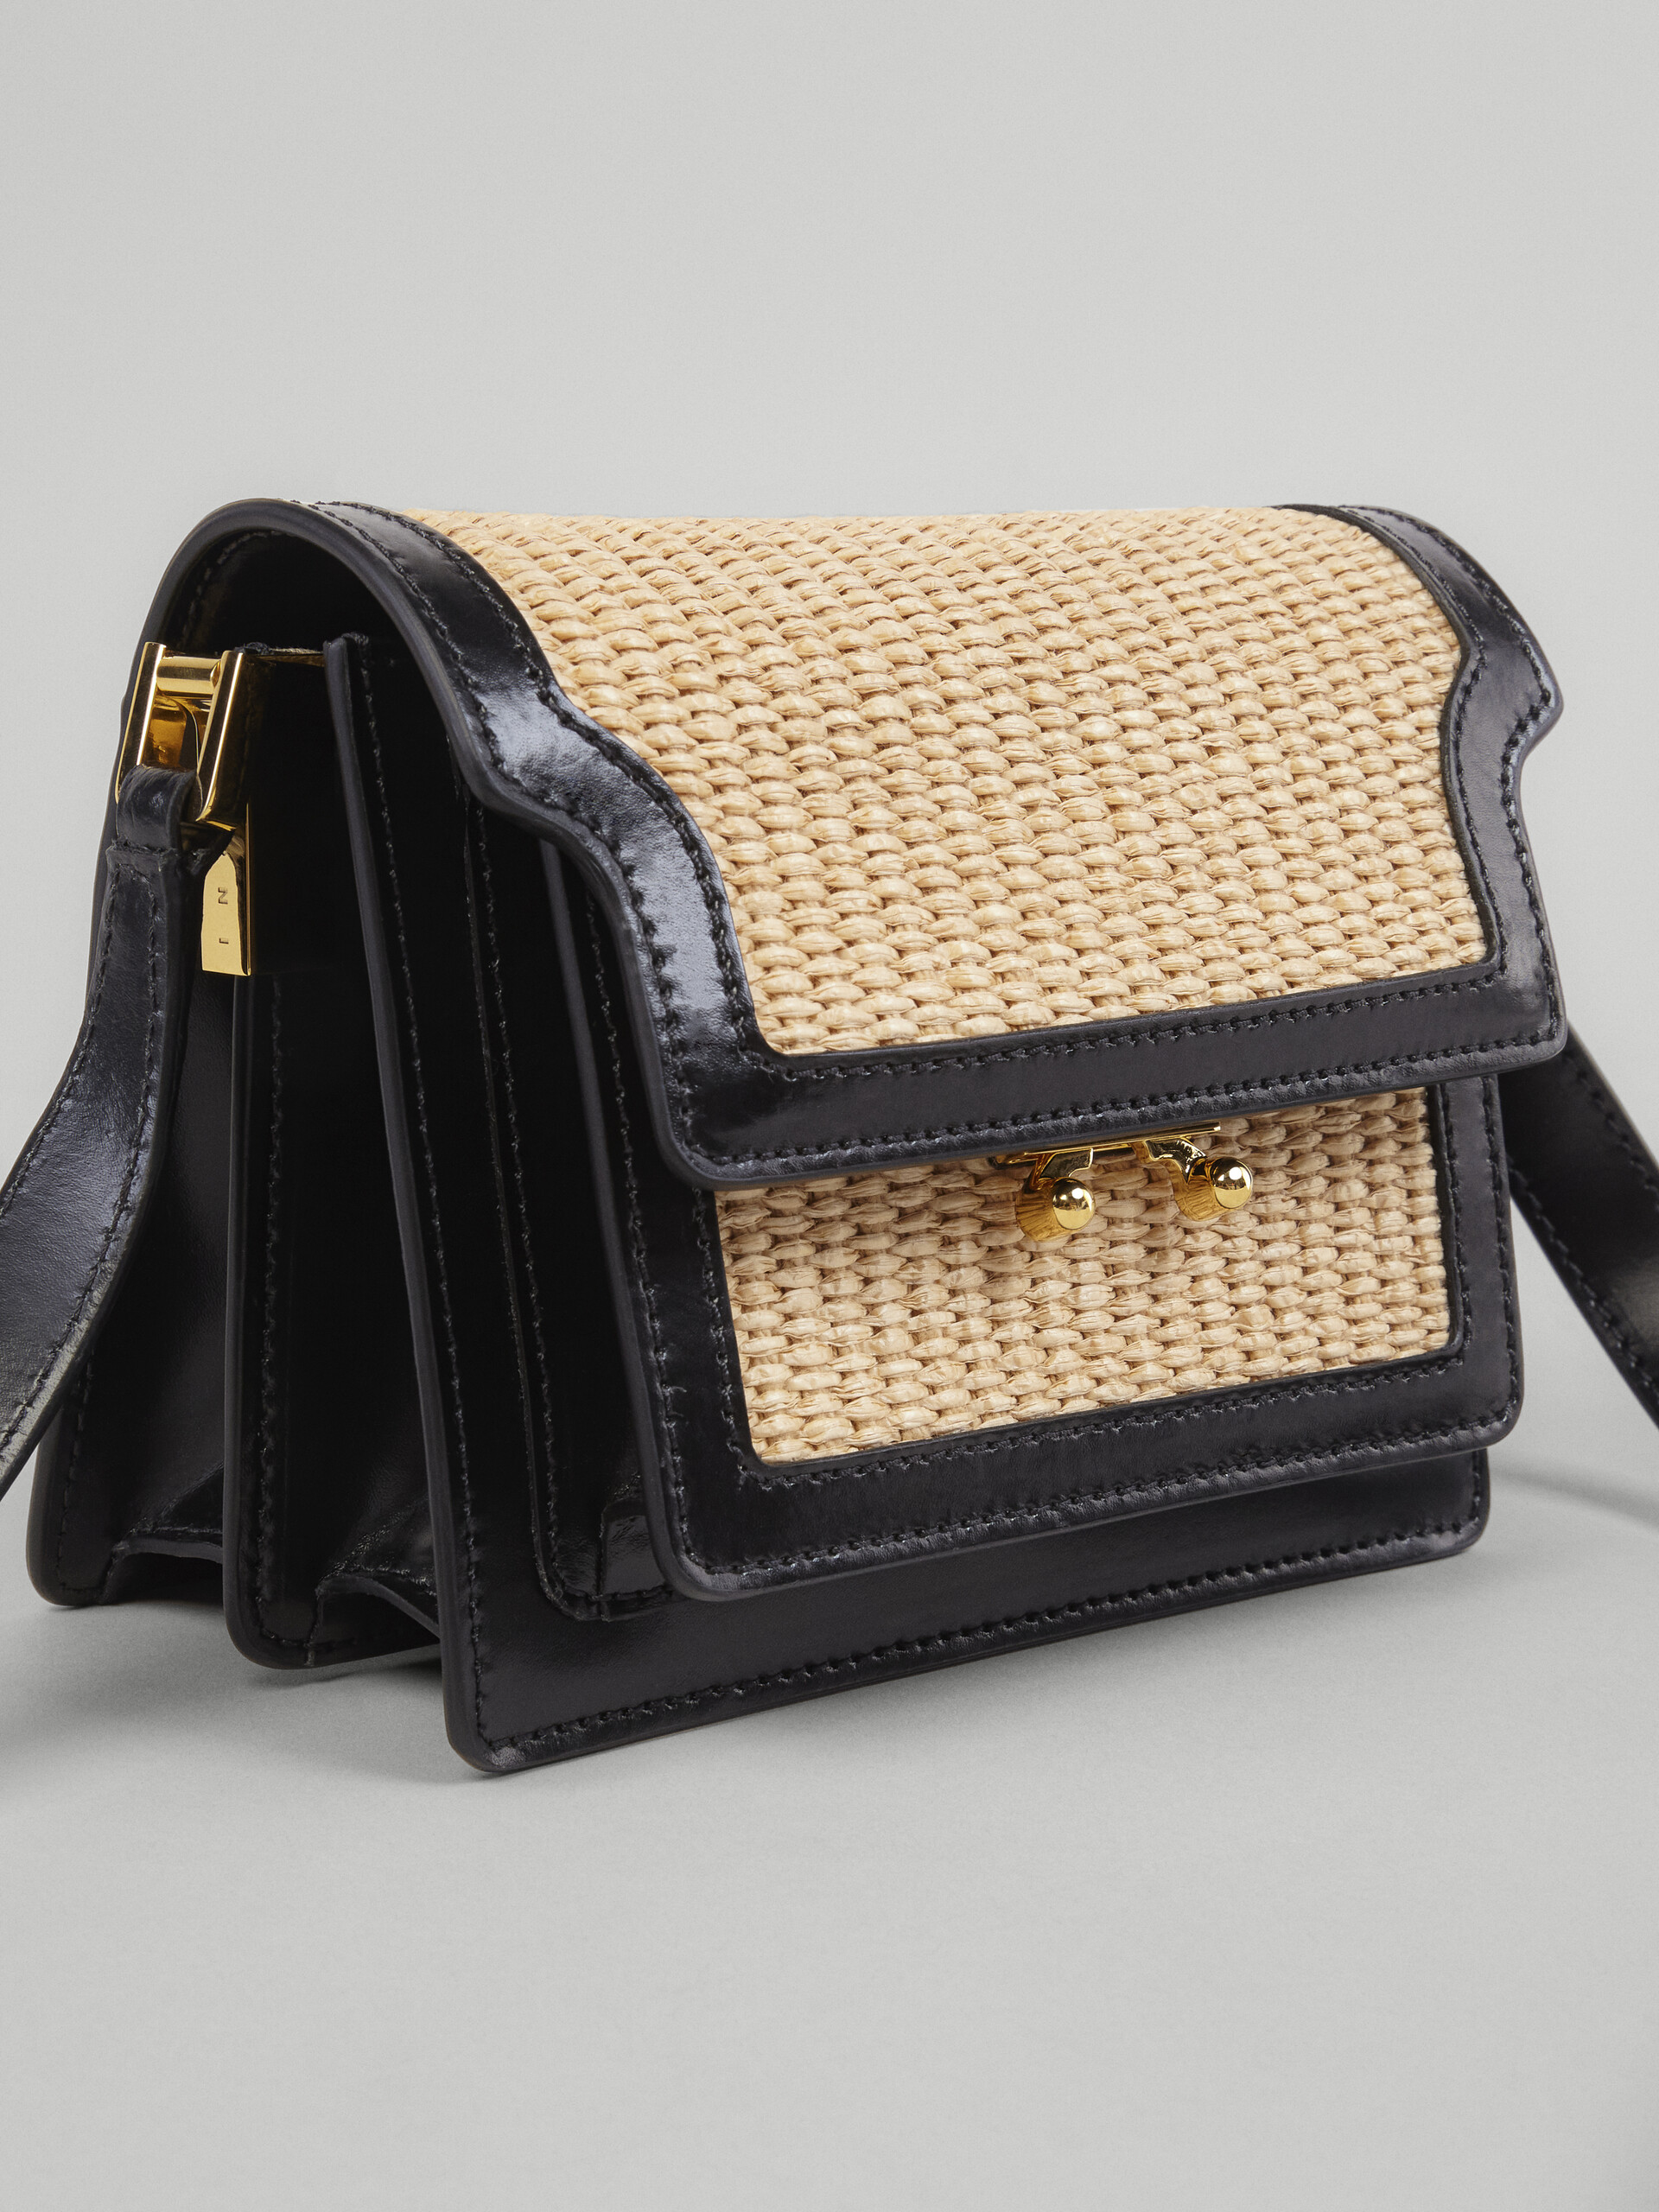 TRUNK SOFT mini bag in black leather and raffia - Shoulder Bag - Image 4